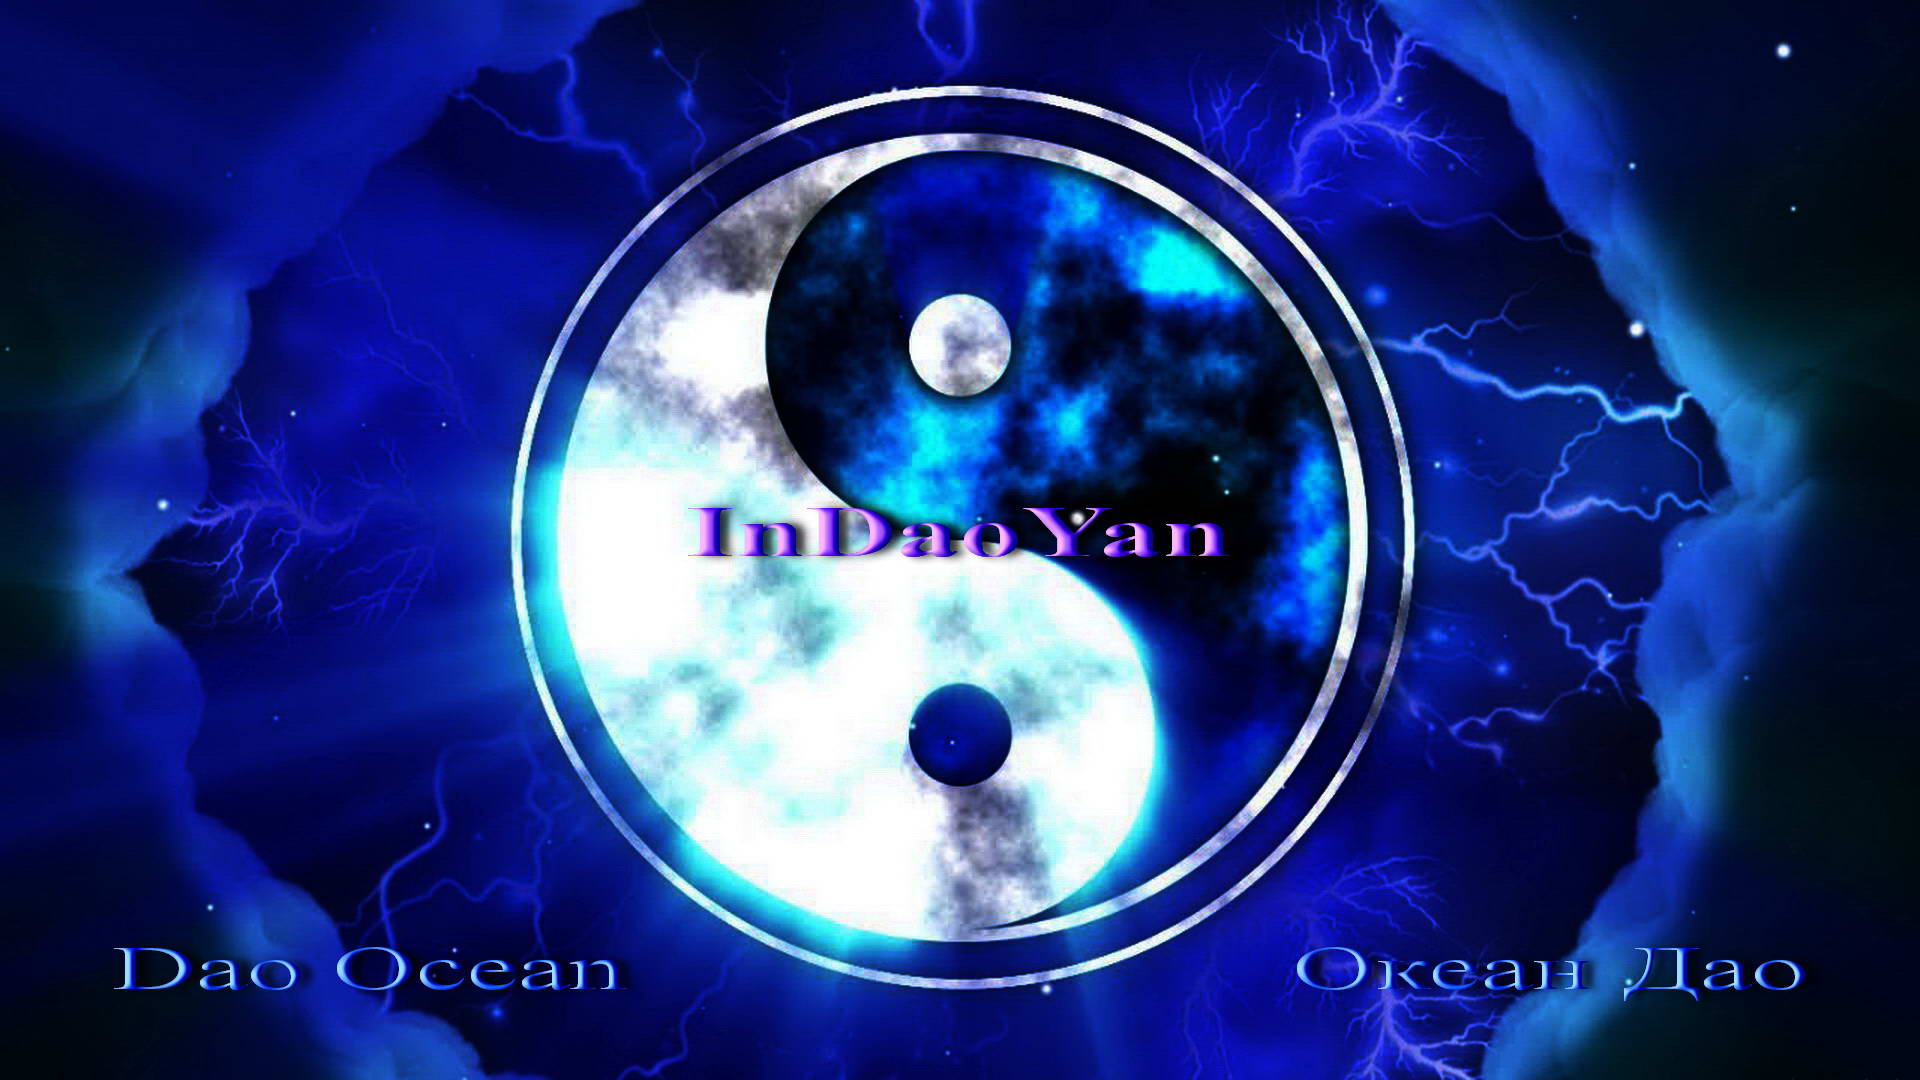 InDaoYan - Океан Дао (Dao Oceanus)